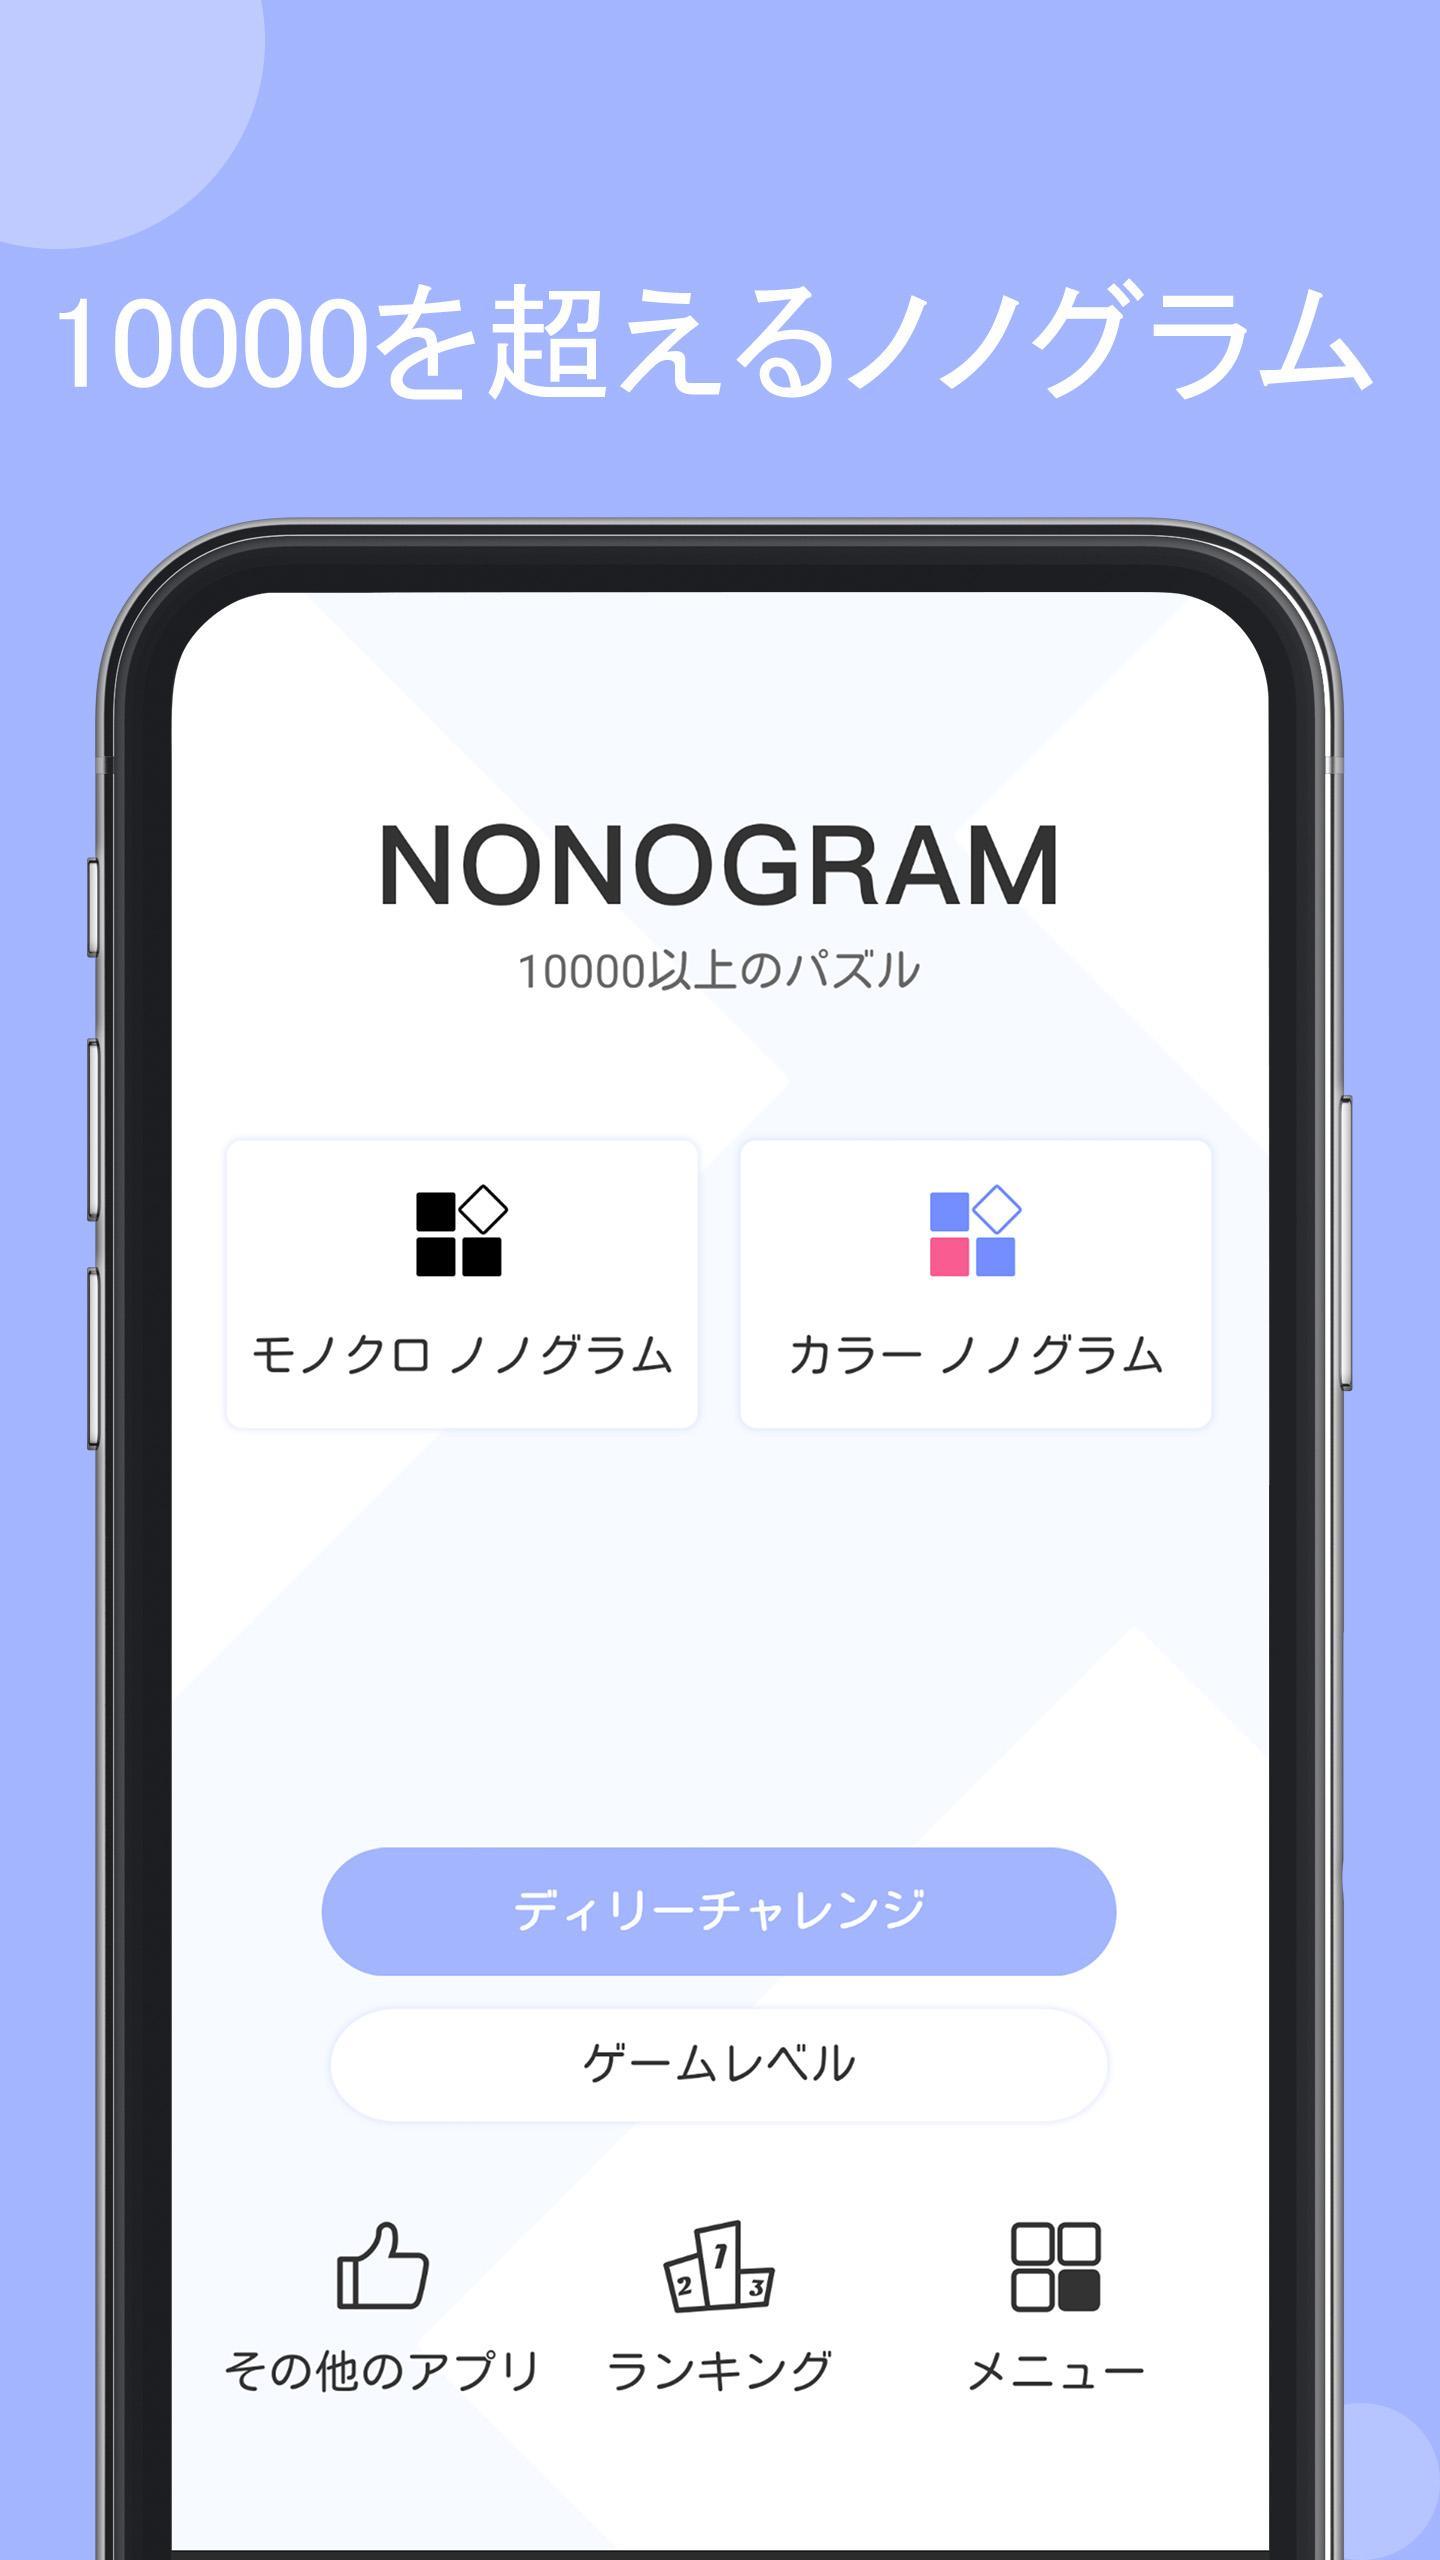 ノノグラム (Nonogram)  - ピクロスゲームのキャプチャ